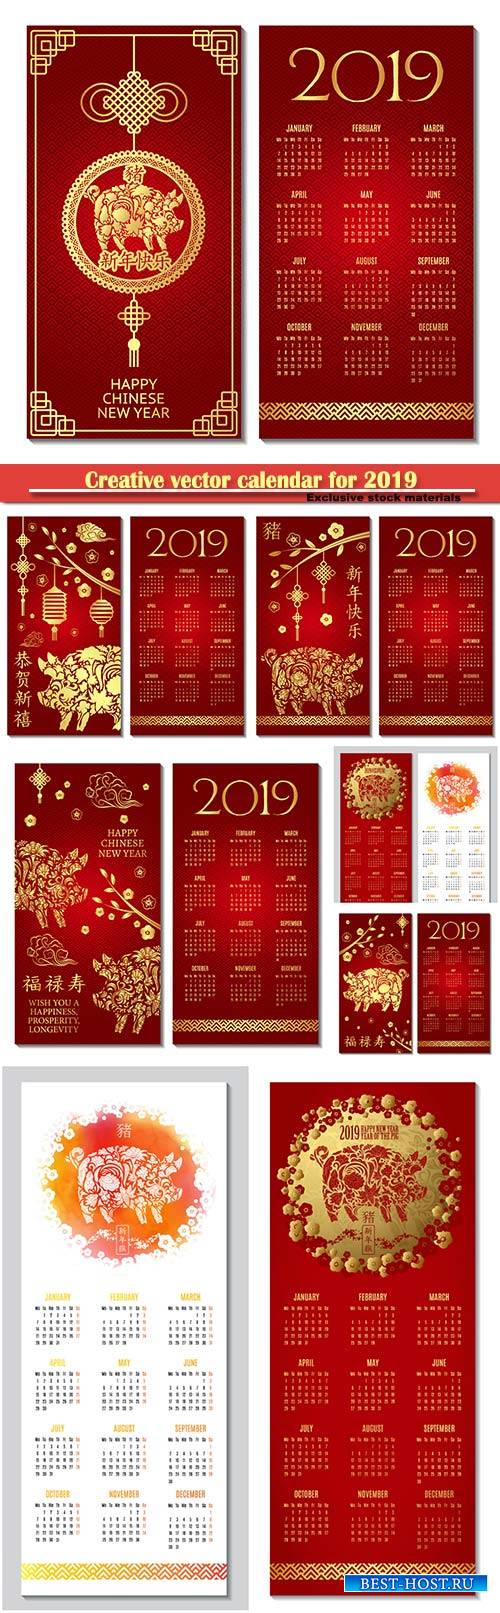 Creative vector calendar for 2019